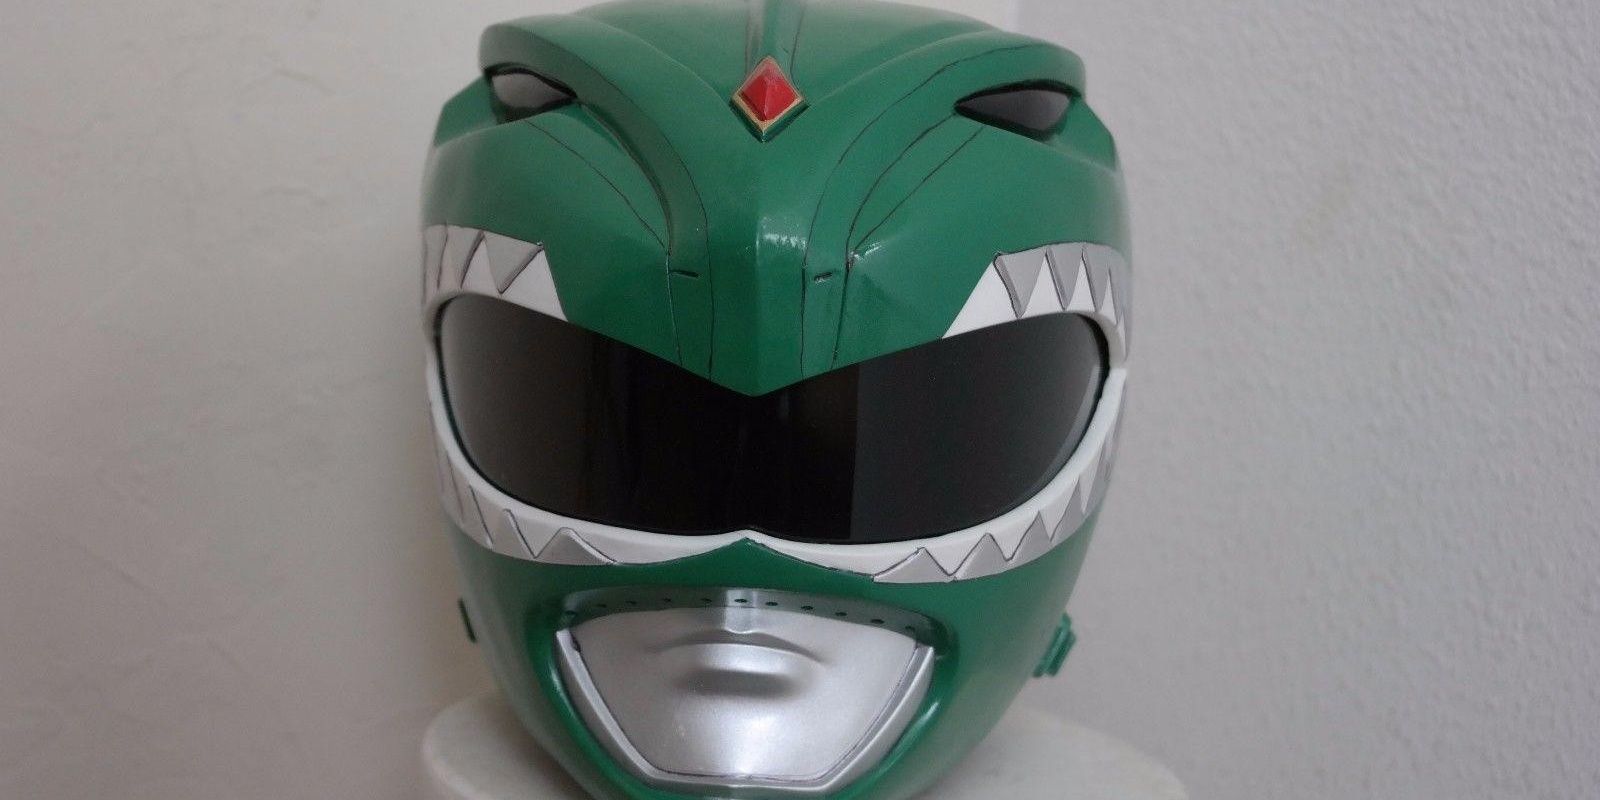 Custom Helmet 2014: Power Rangers